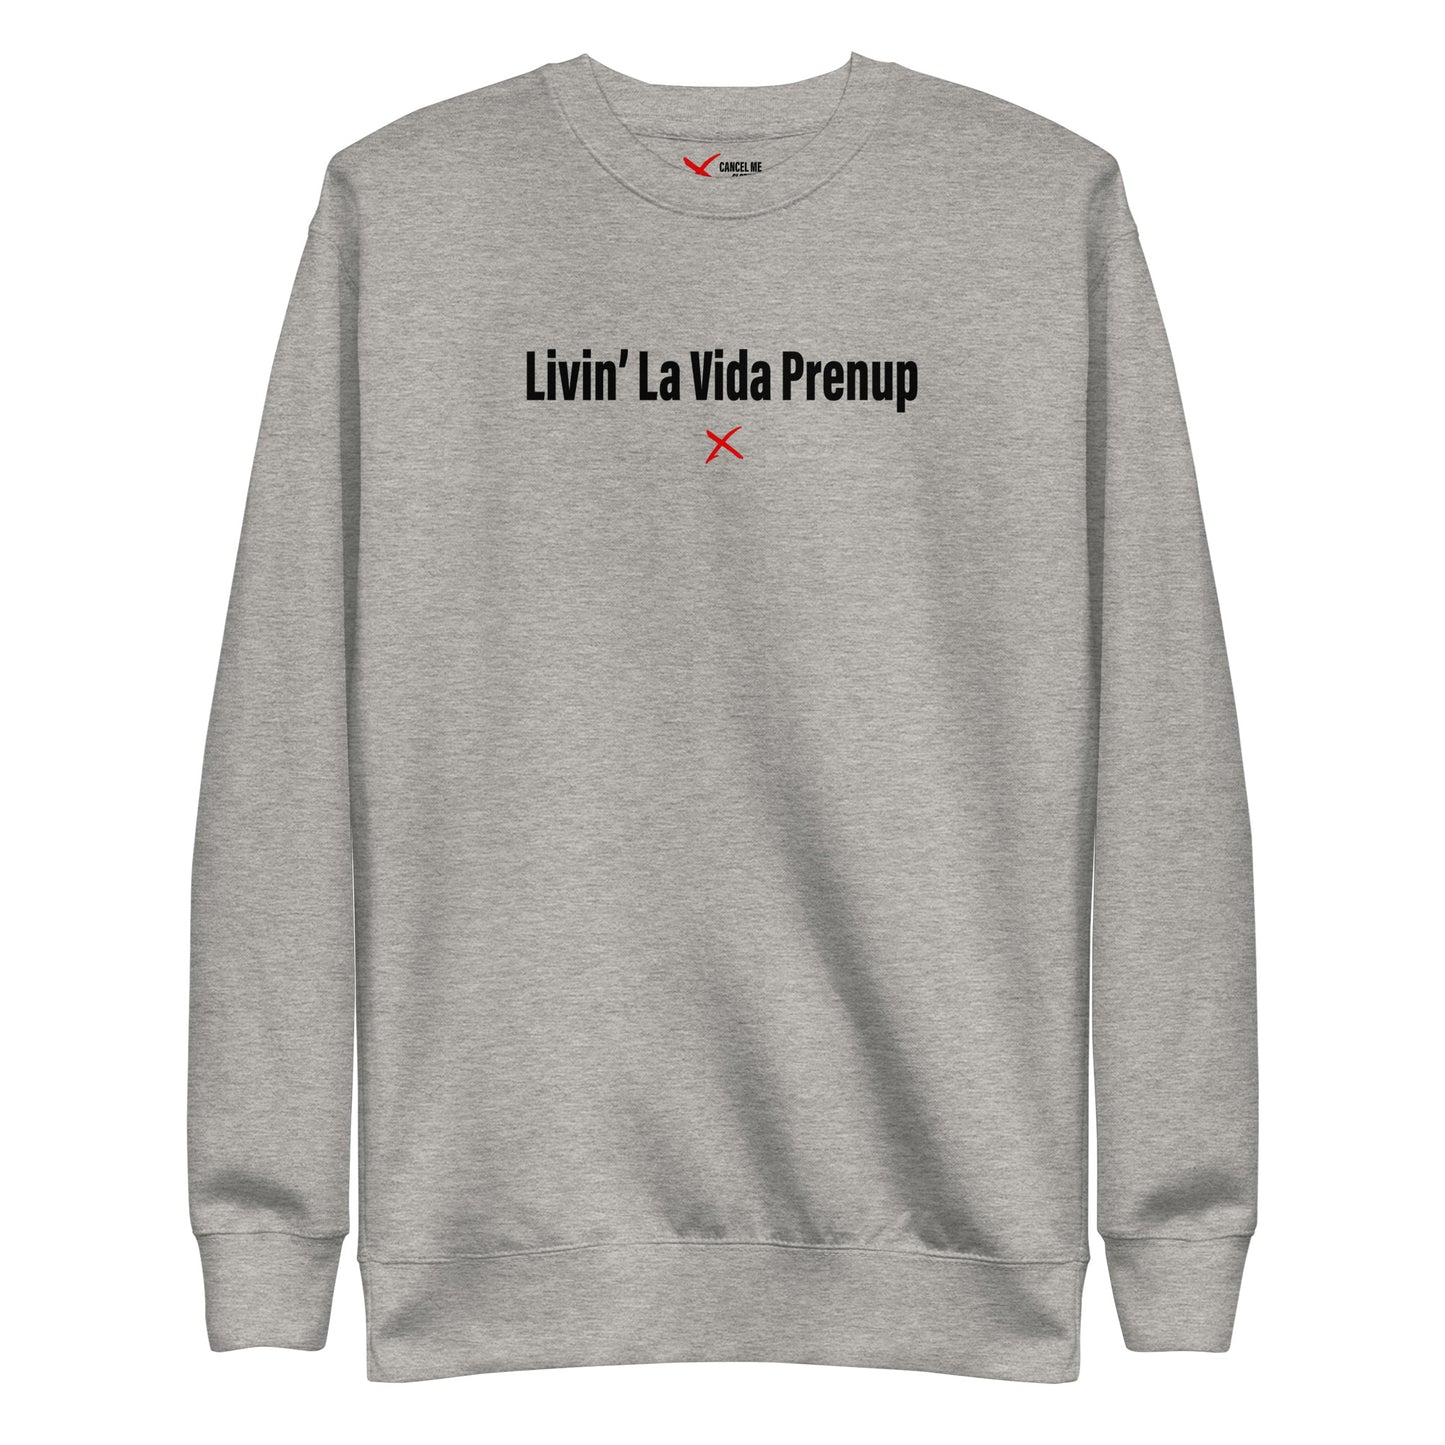 Livin' La Vida Prenup - Sweatshirt